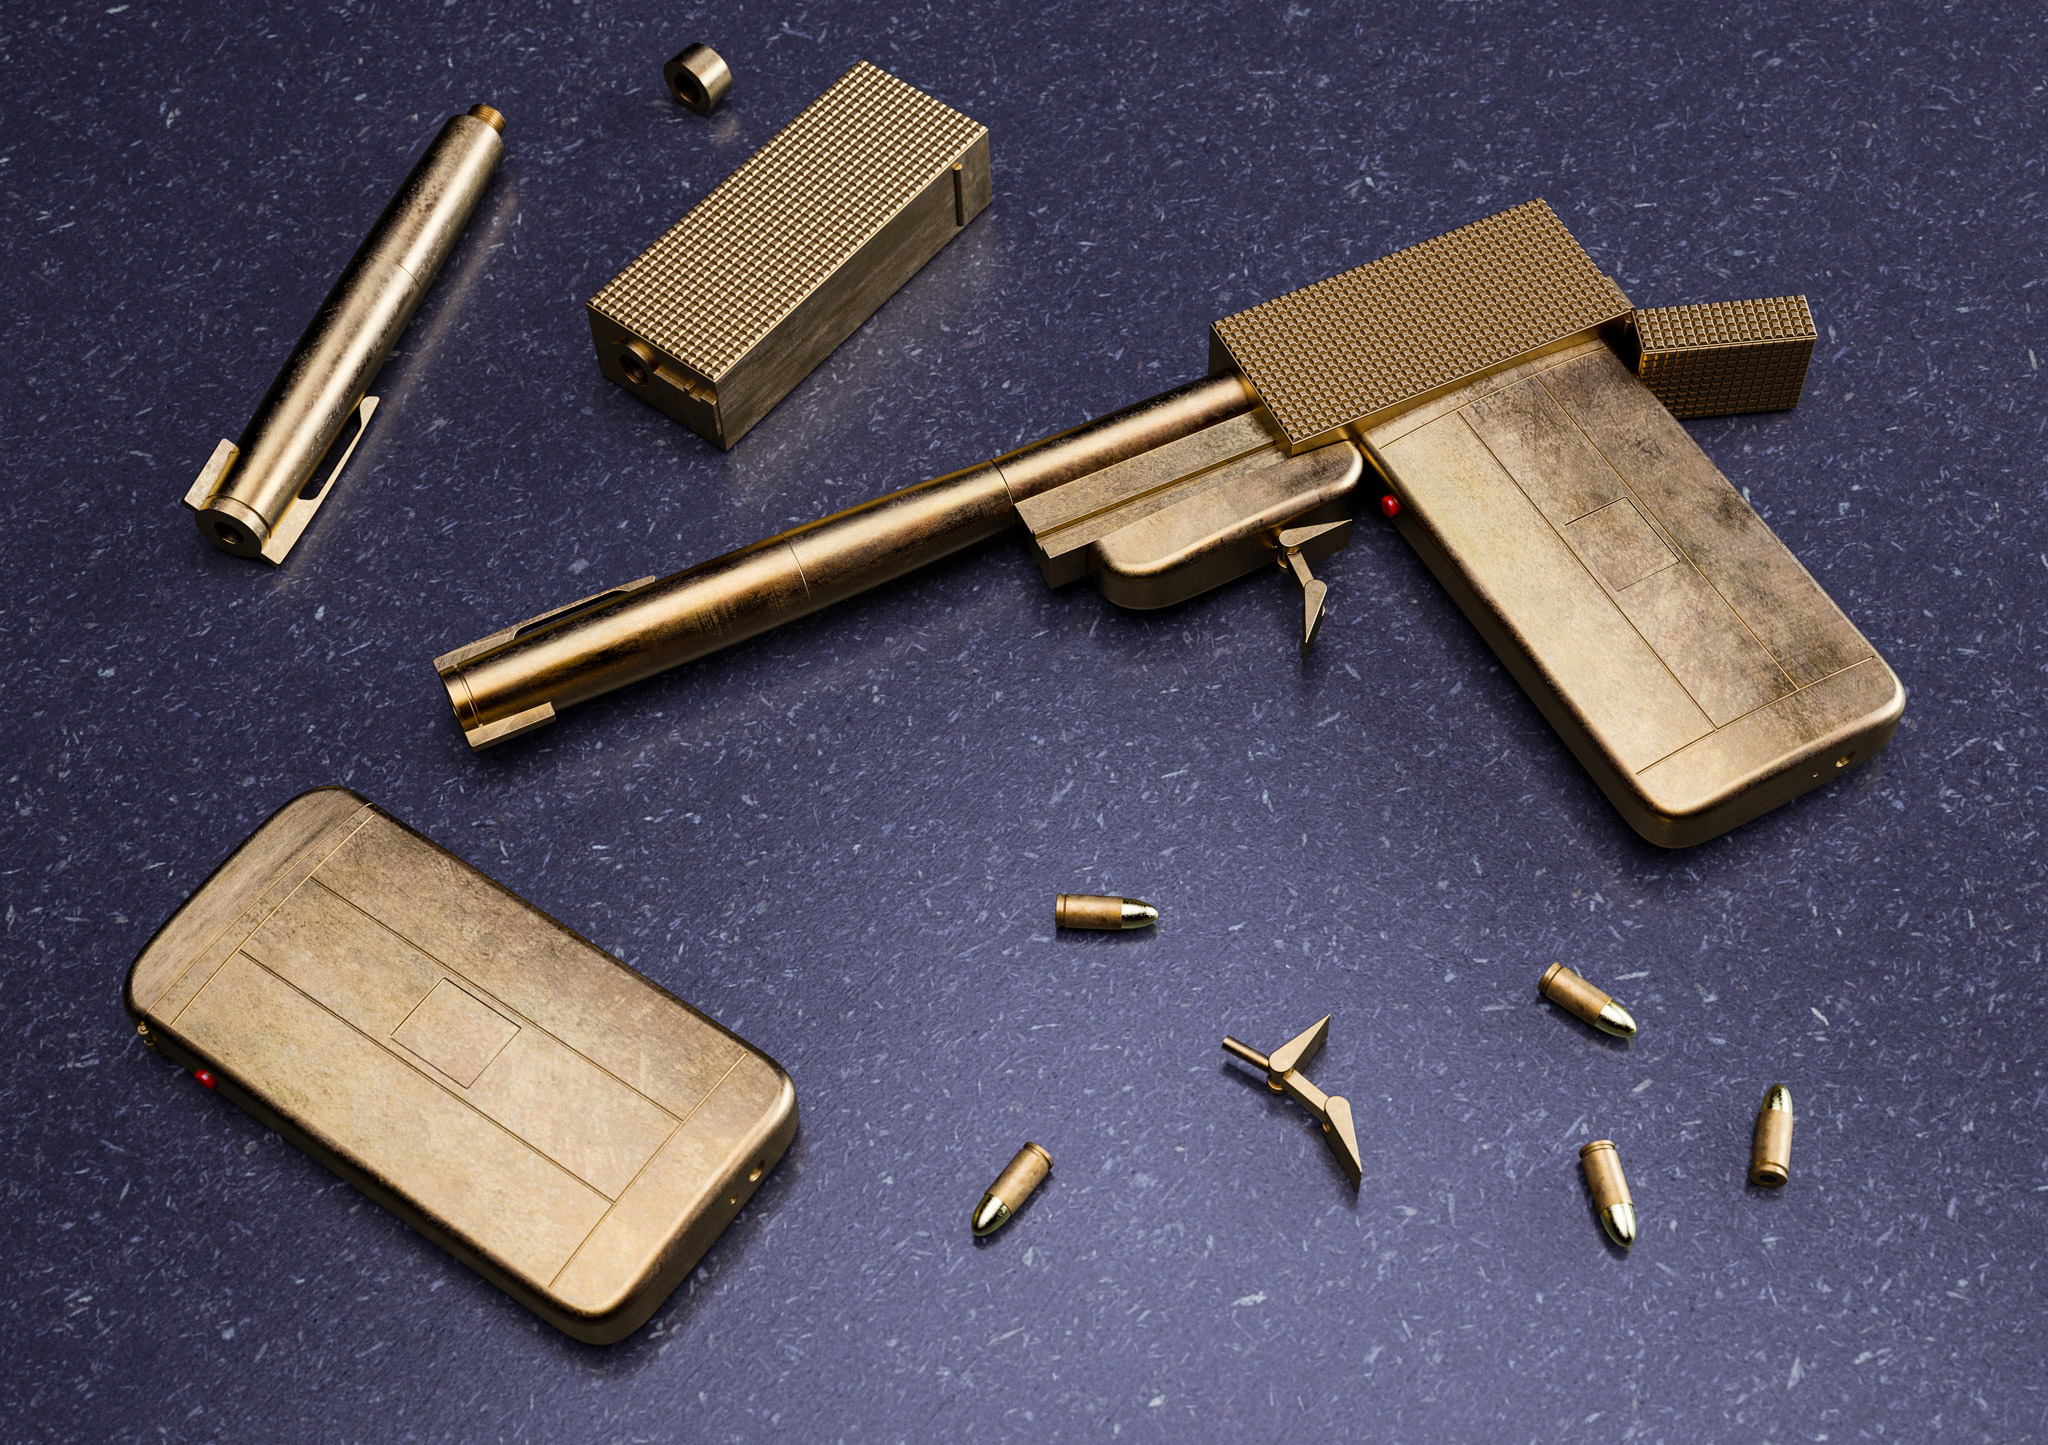 007 golden gun found in The Man with the golden gun.